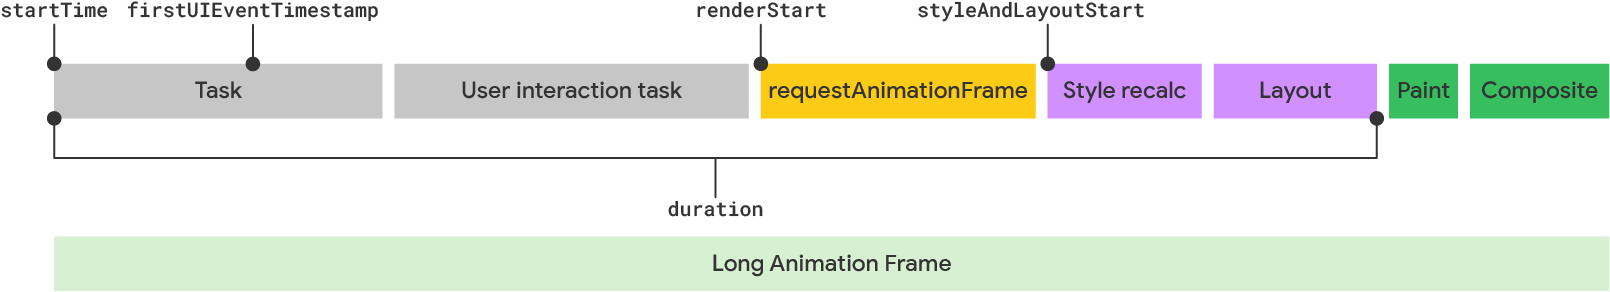 Eine Visualisierung eines langen Animations-Frames gemäß dem LoAF-Modell.